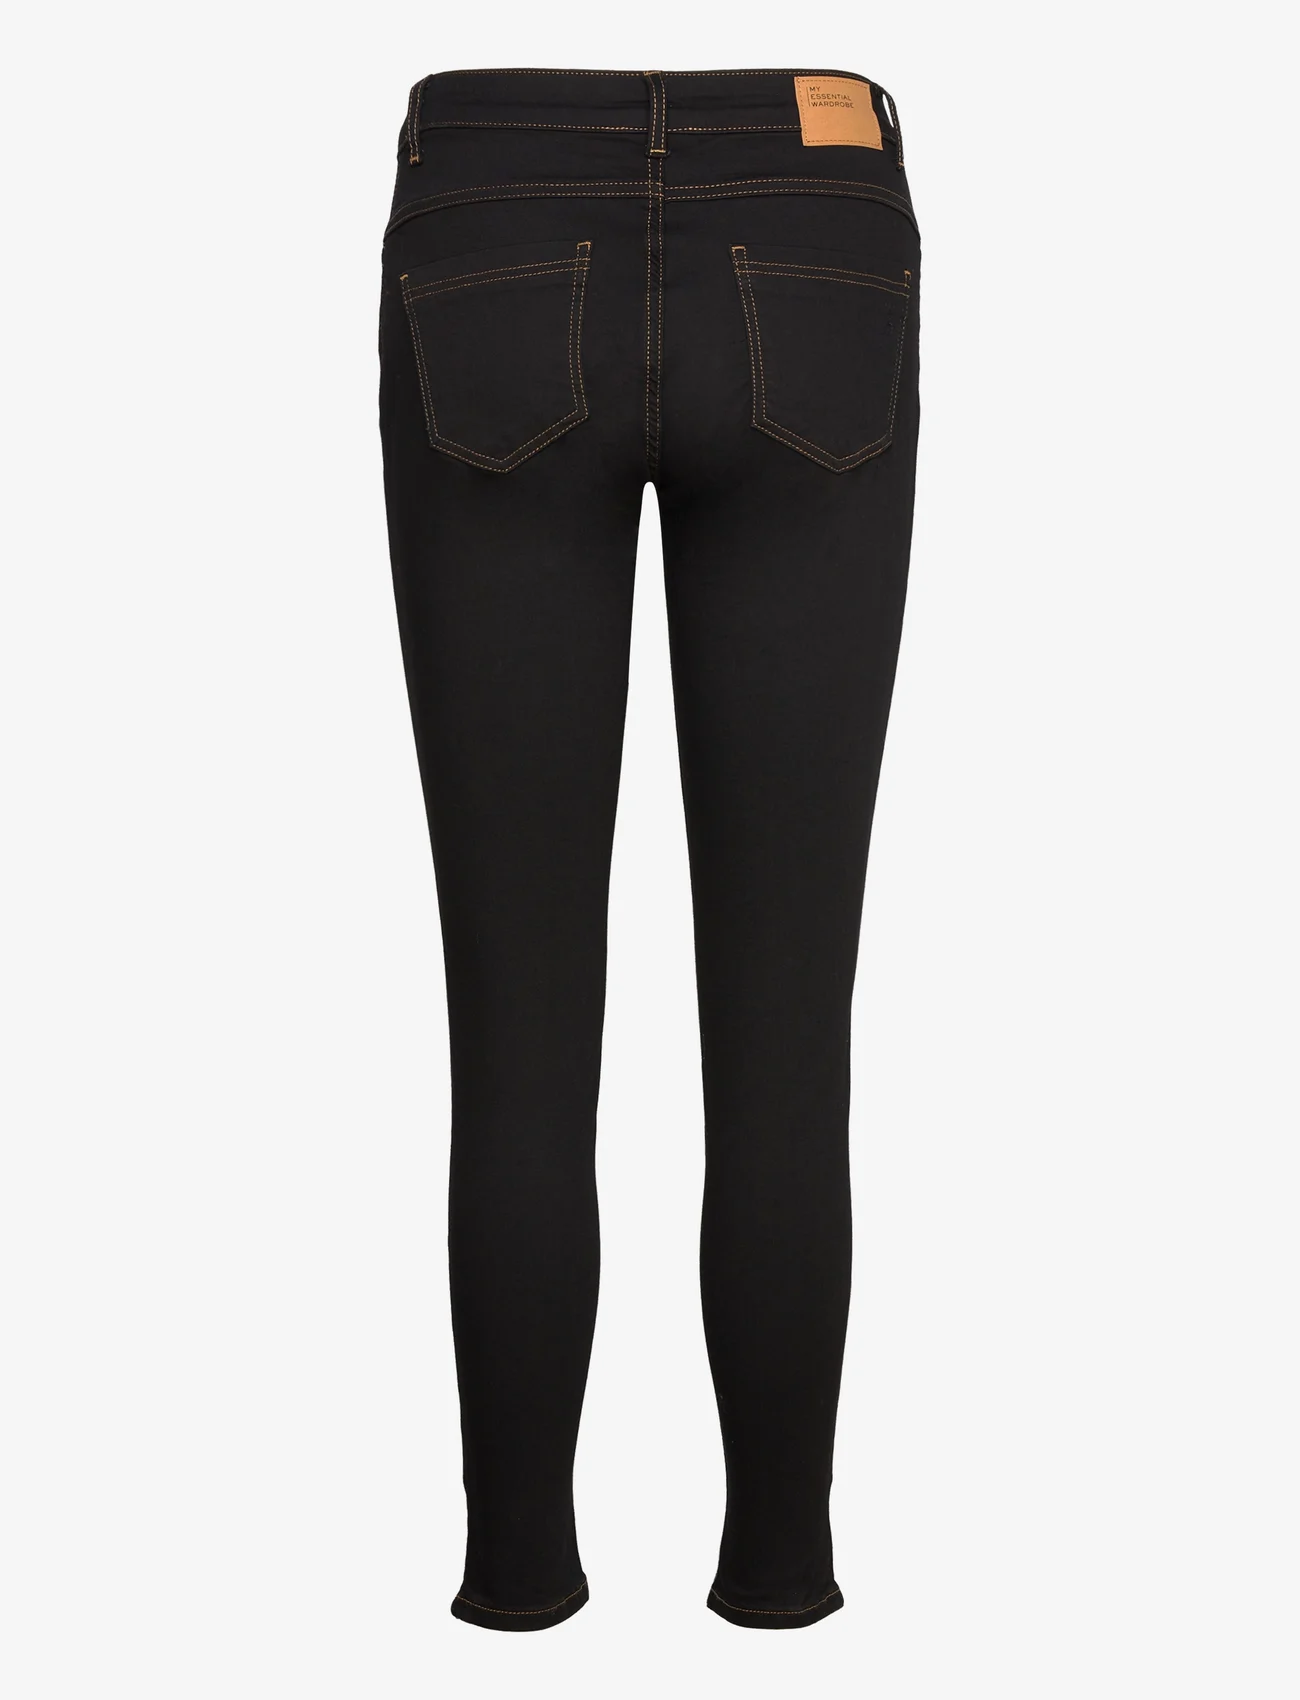 My Essential Wardrobe - 37 THE CELINAZIP 101 HIGH SLIM Y - slim jeans - black vintage wash - 1